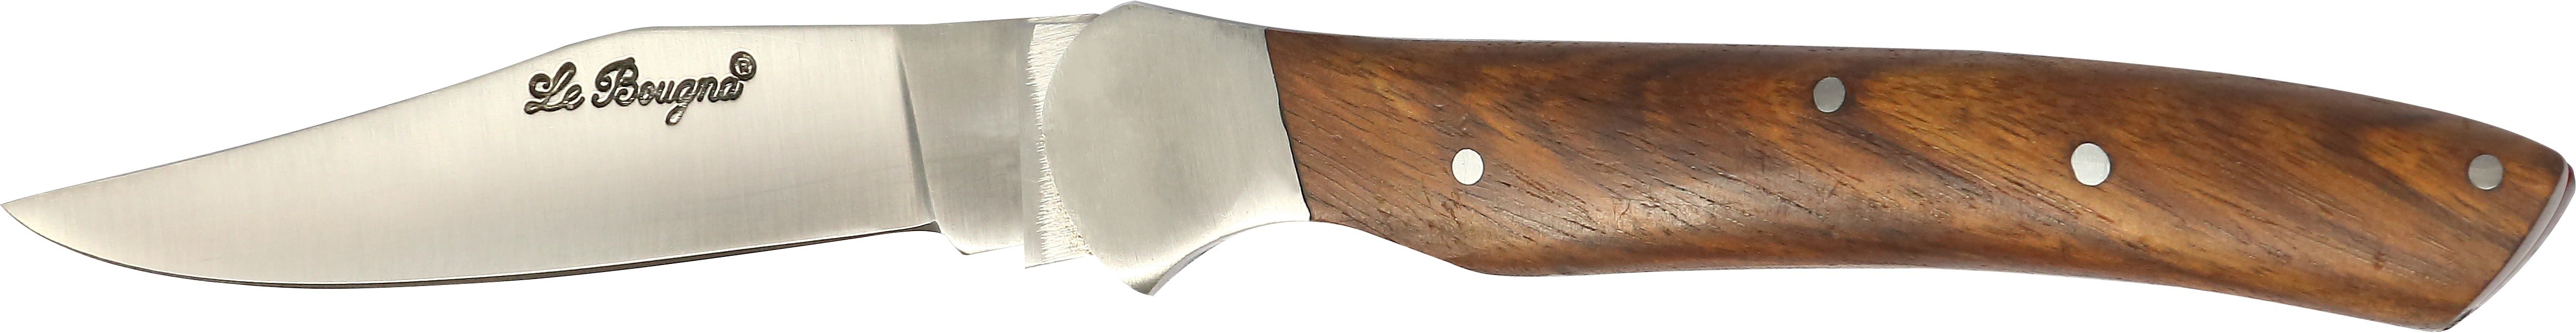 B - Couteau 12 cm Élégance - bois marron